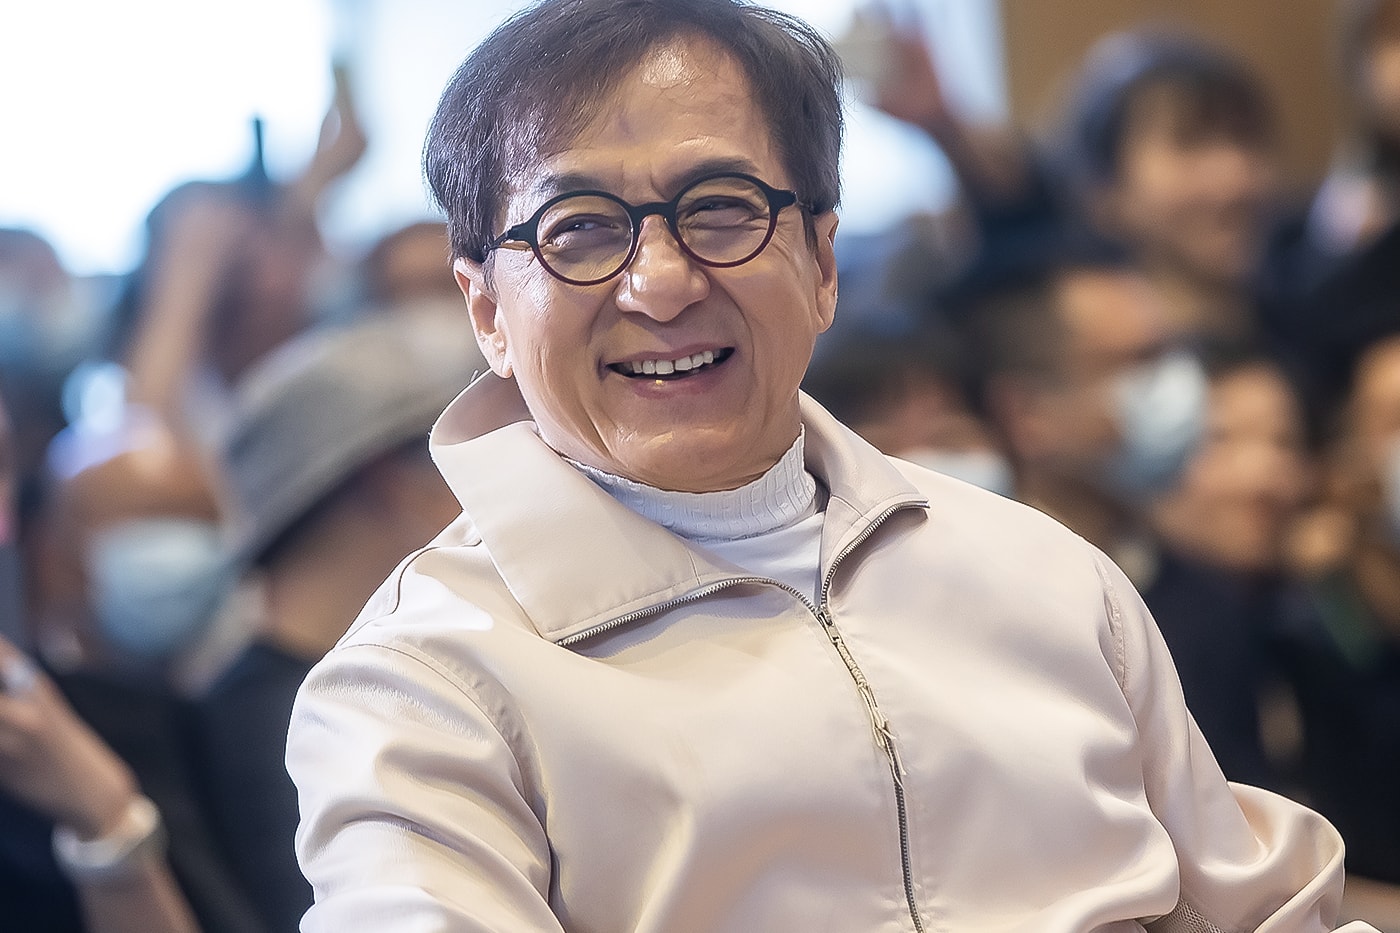 Jackie Chan Rush Hour 4 Development Update Info Chris Tucker Brett Ratner